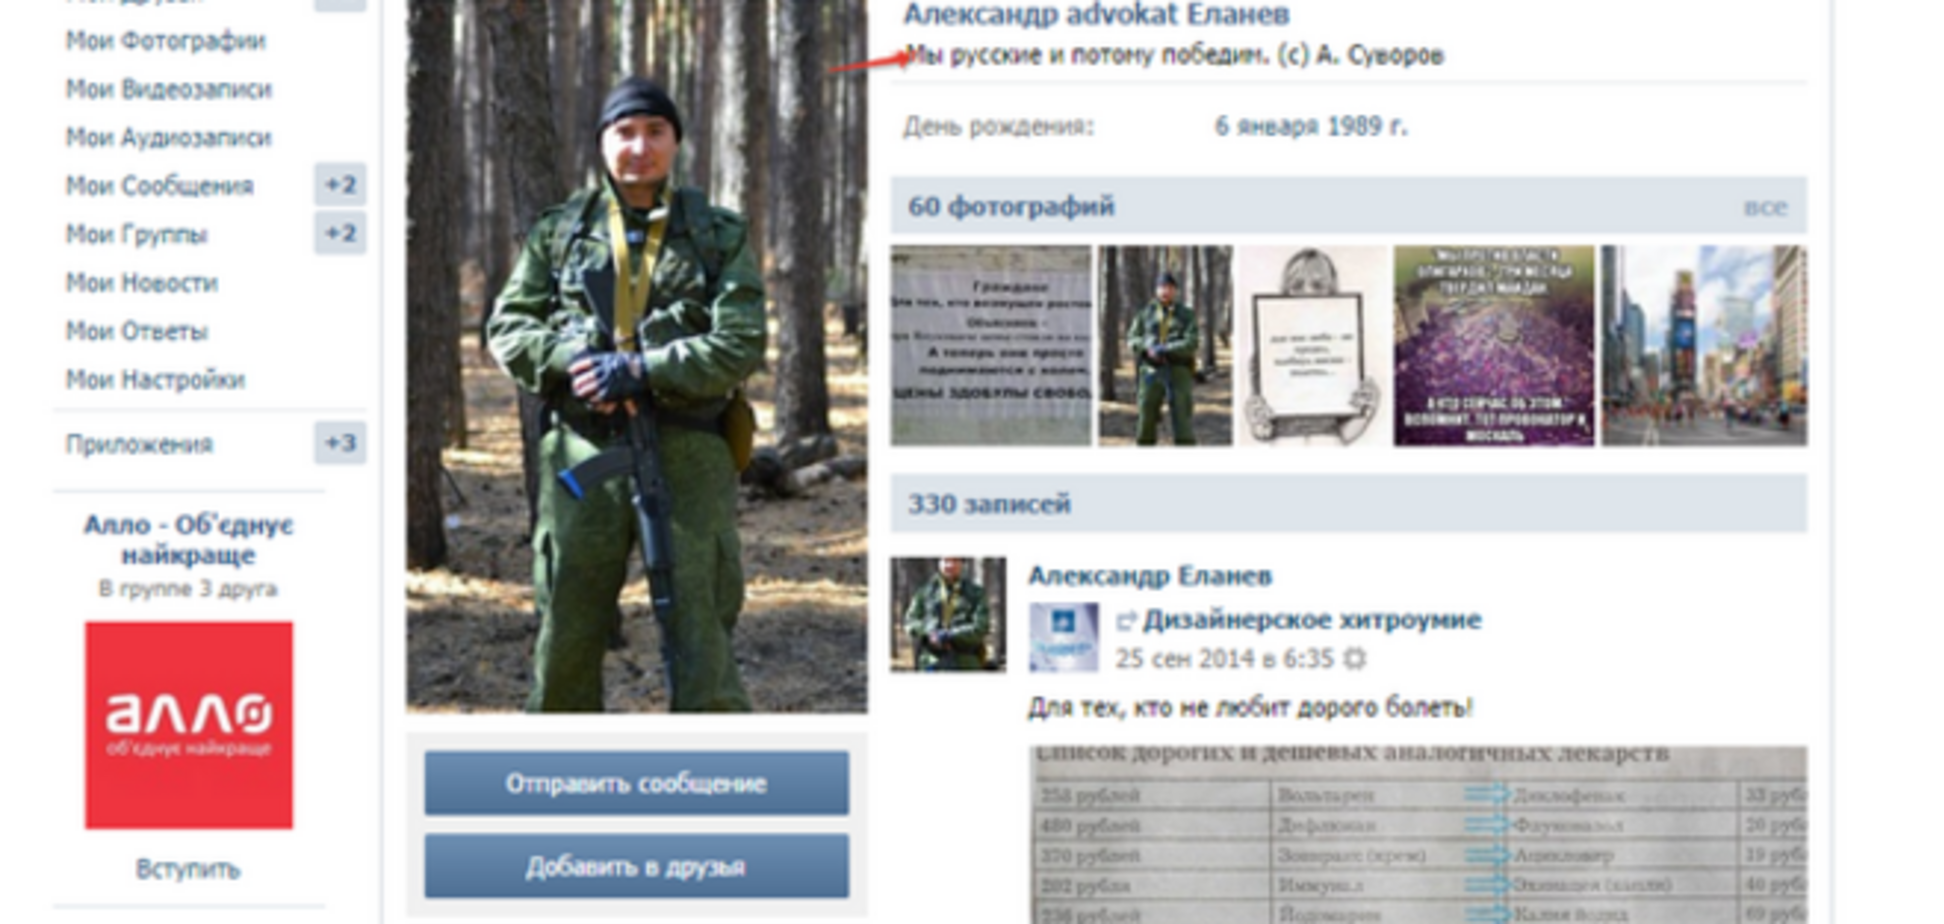 Бунт ВВ курується росіянами через ВКонтакте